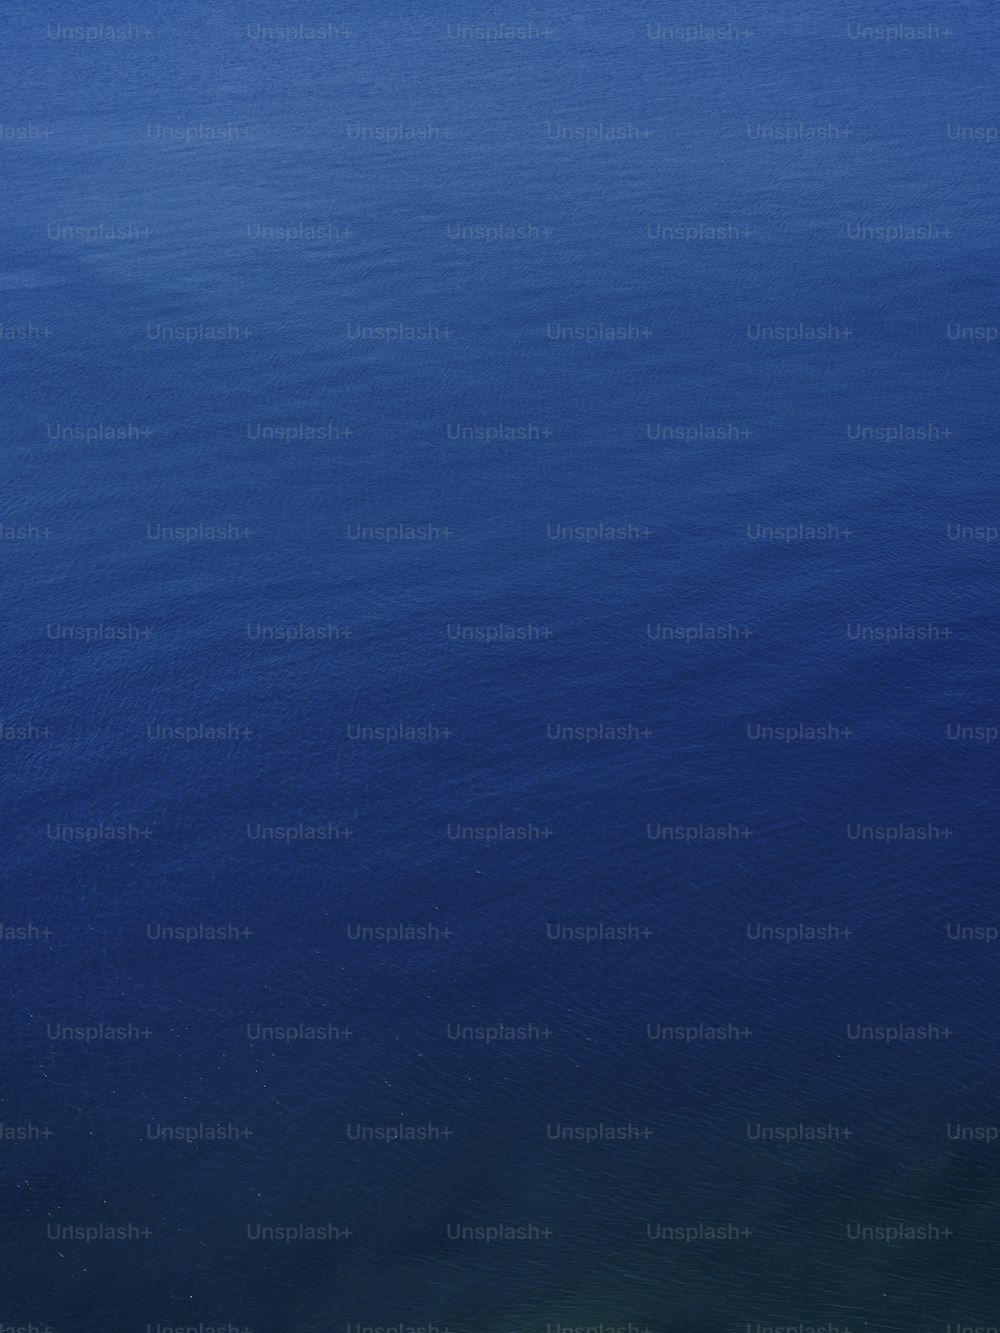 900+ Light Blue Background Images: Download HD Backgrounds on Unsplash